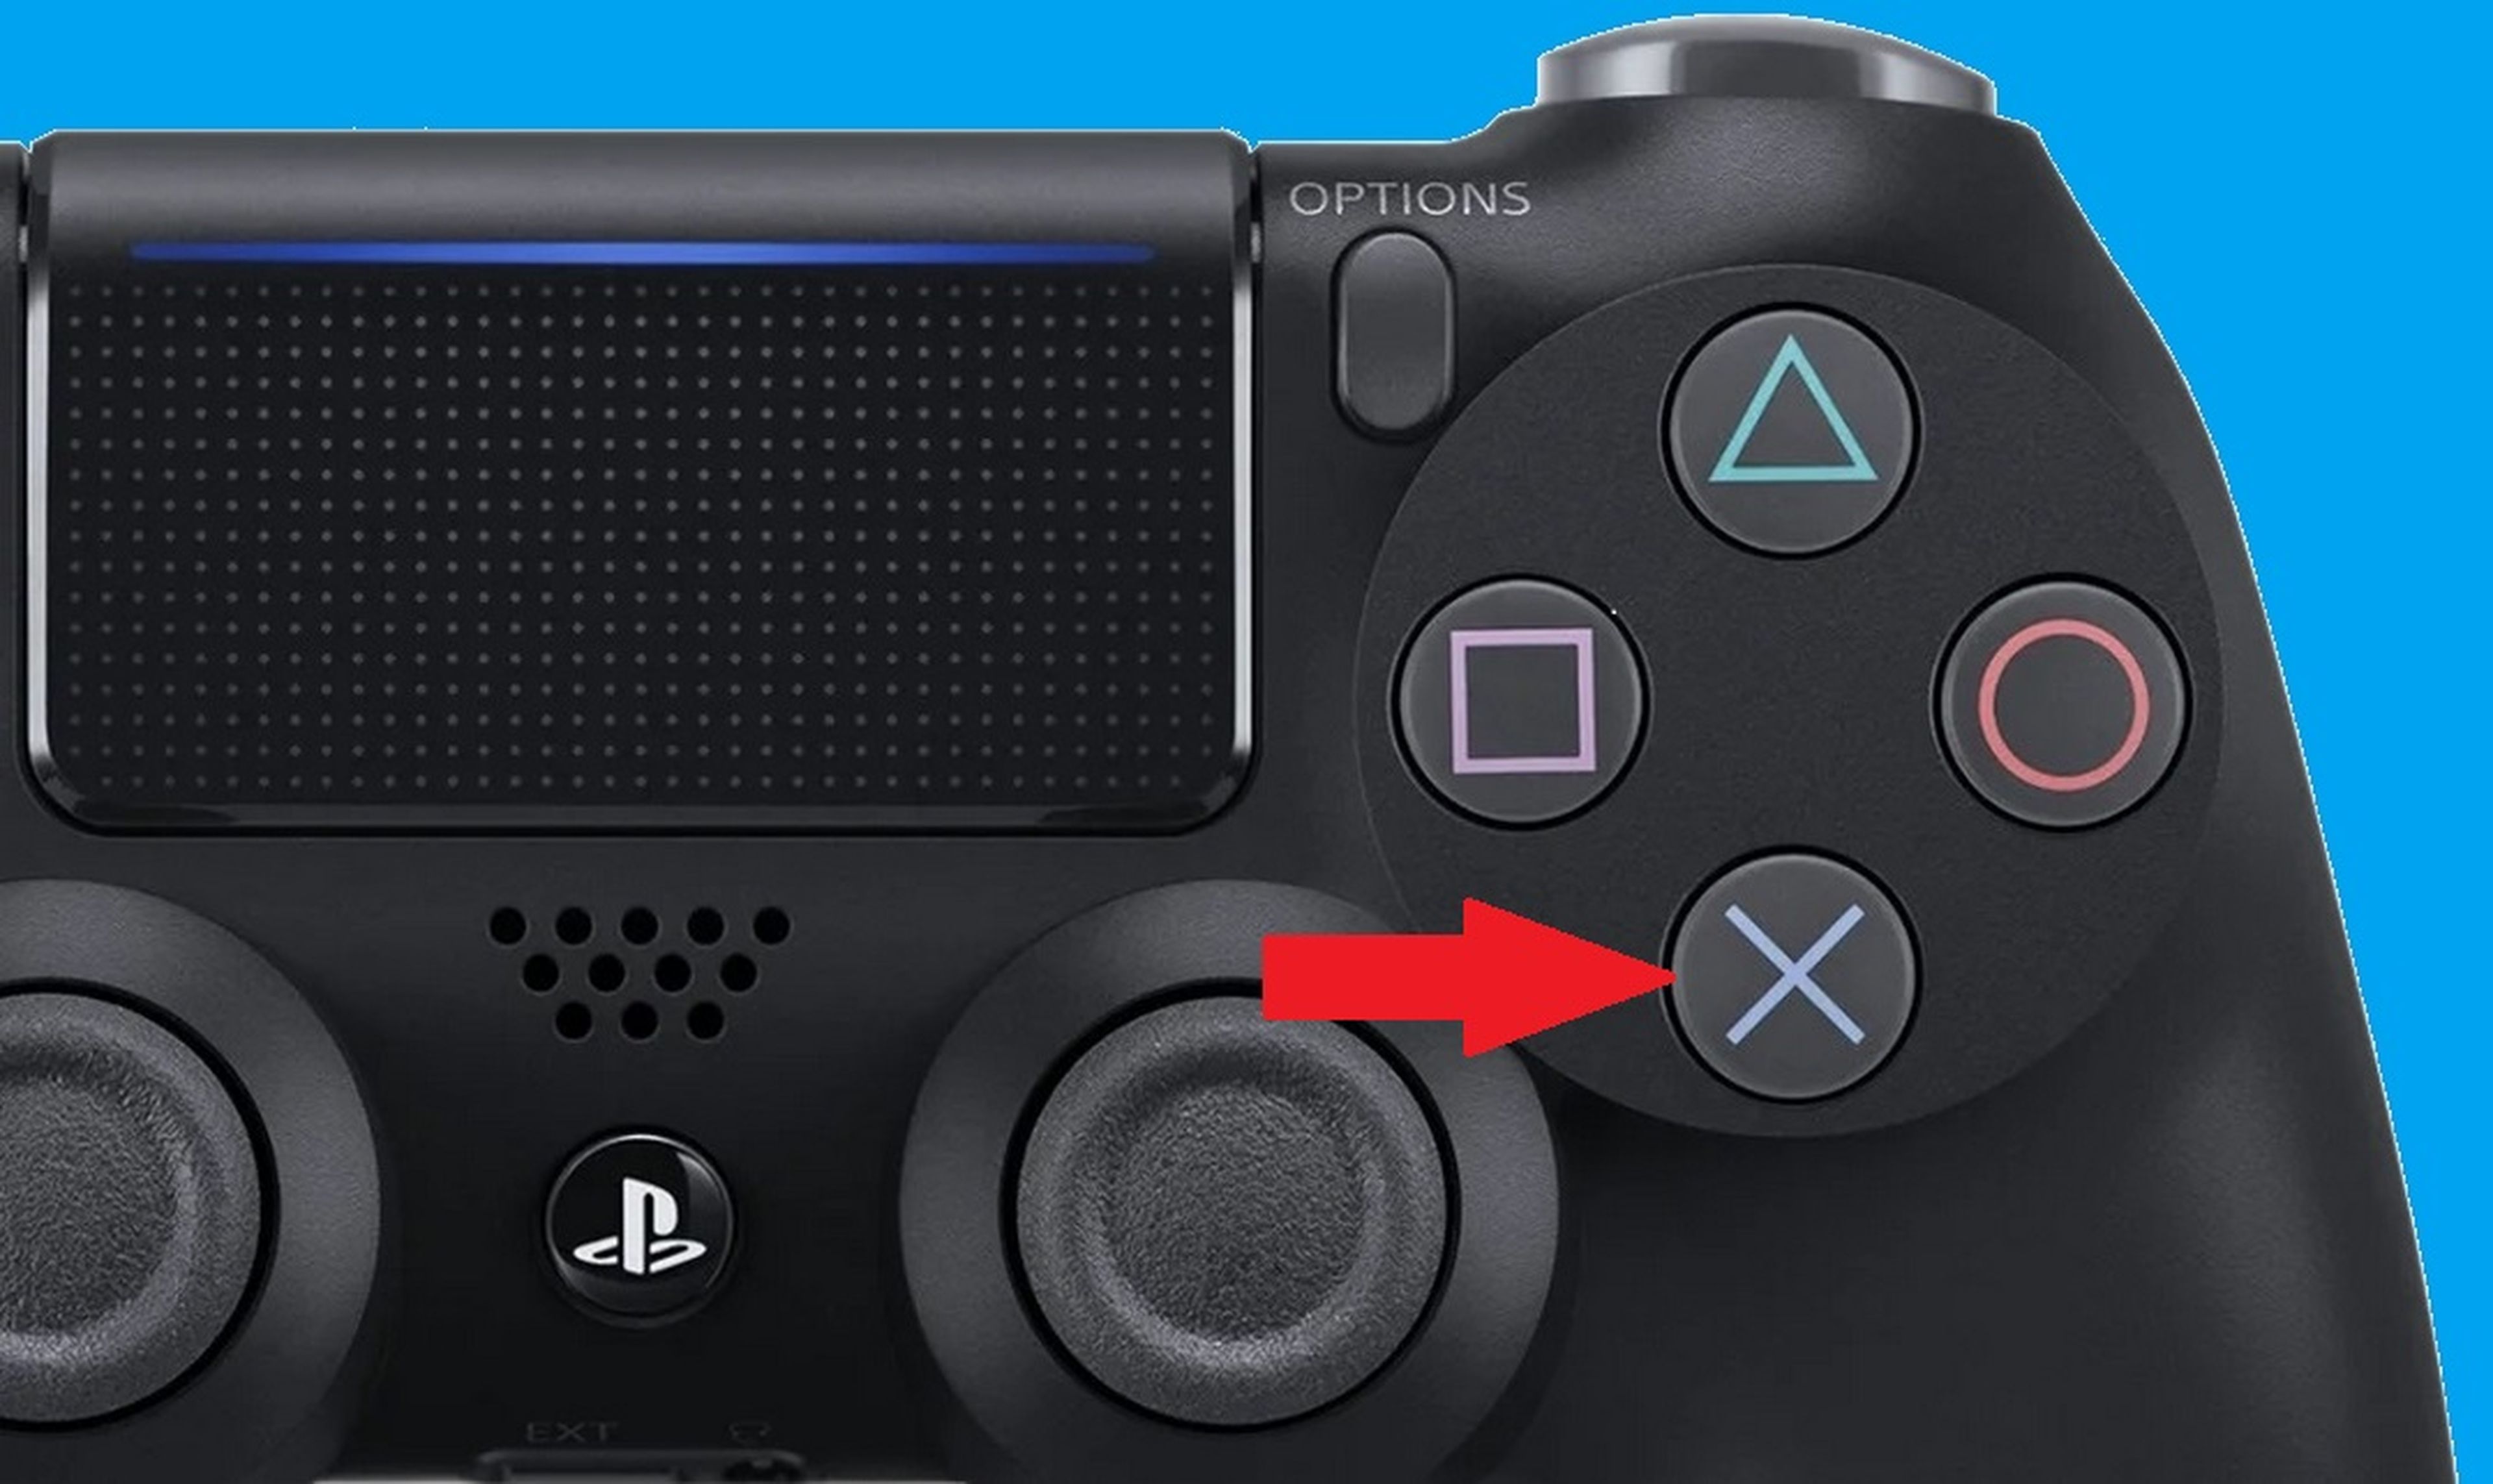 Si toda la vida has llamado "equis" al botón del mando de PlayStation, te estás equivocando